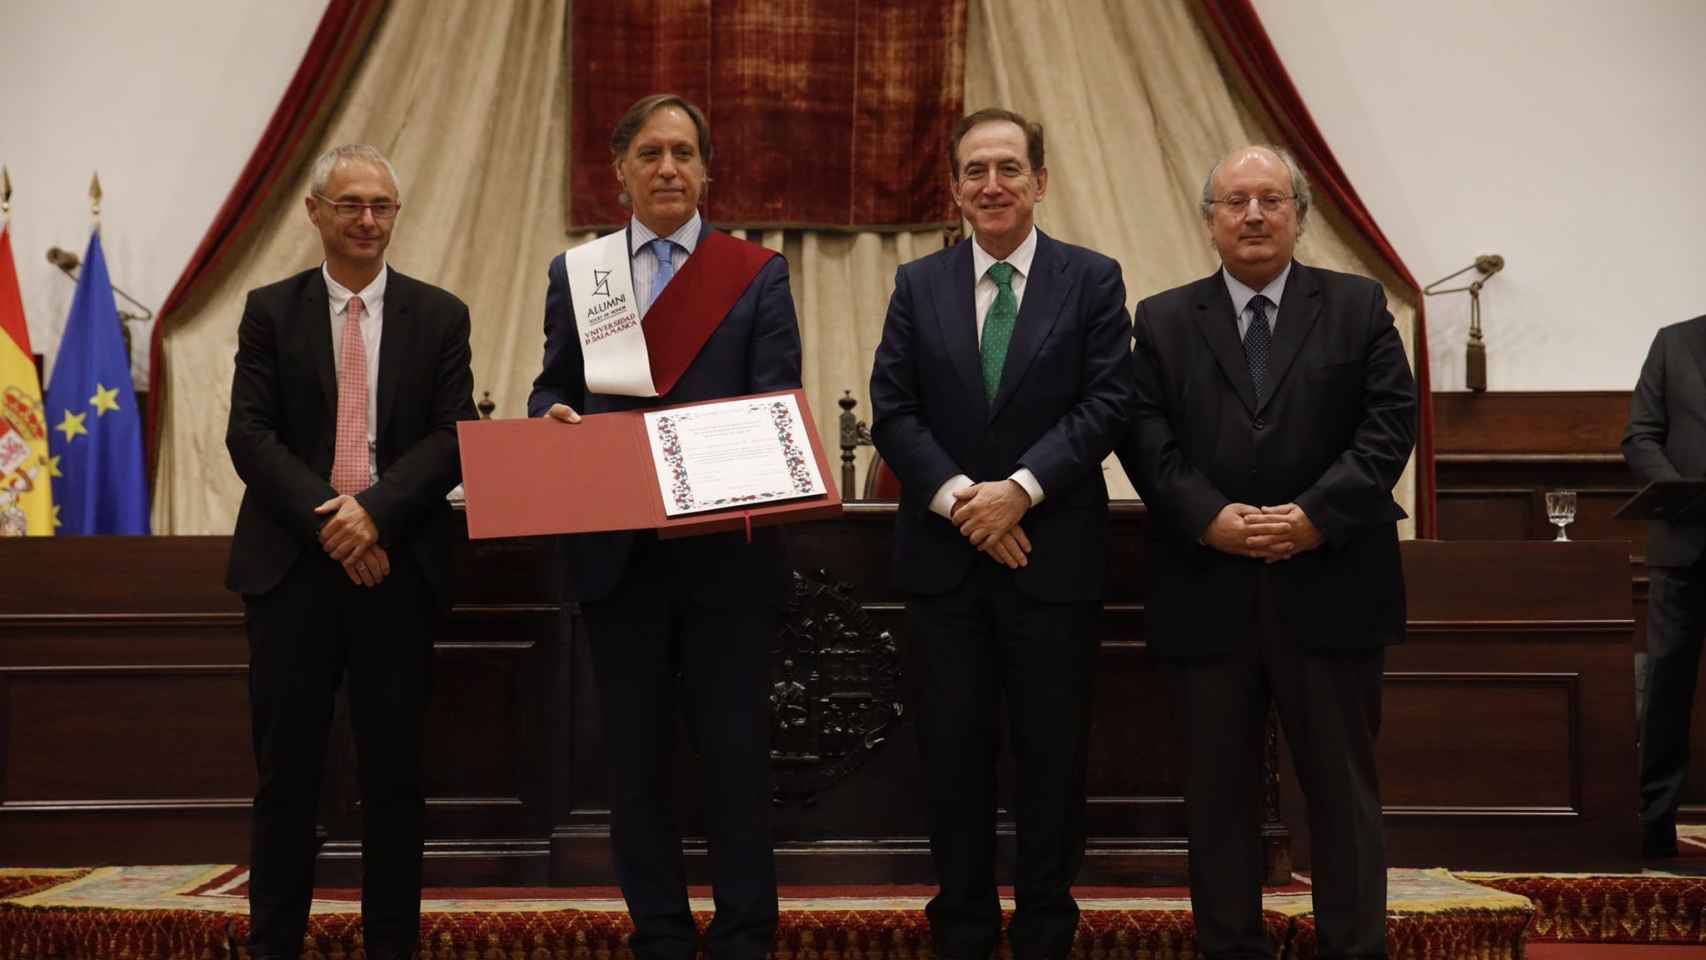 Carbayo en el acto de nombramiento de socio de honor al Ayuntamiento de Salamanca por parte de Alumni-USAL